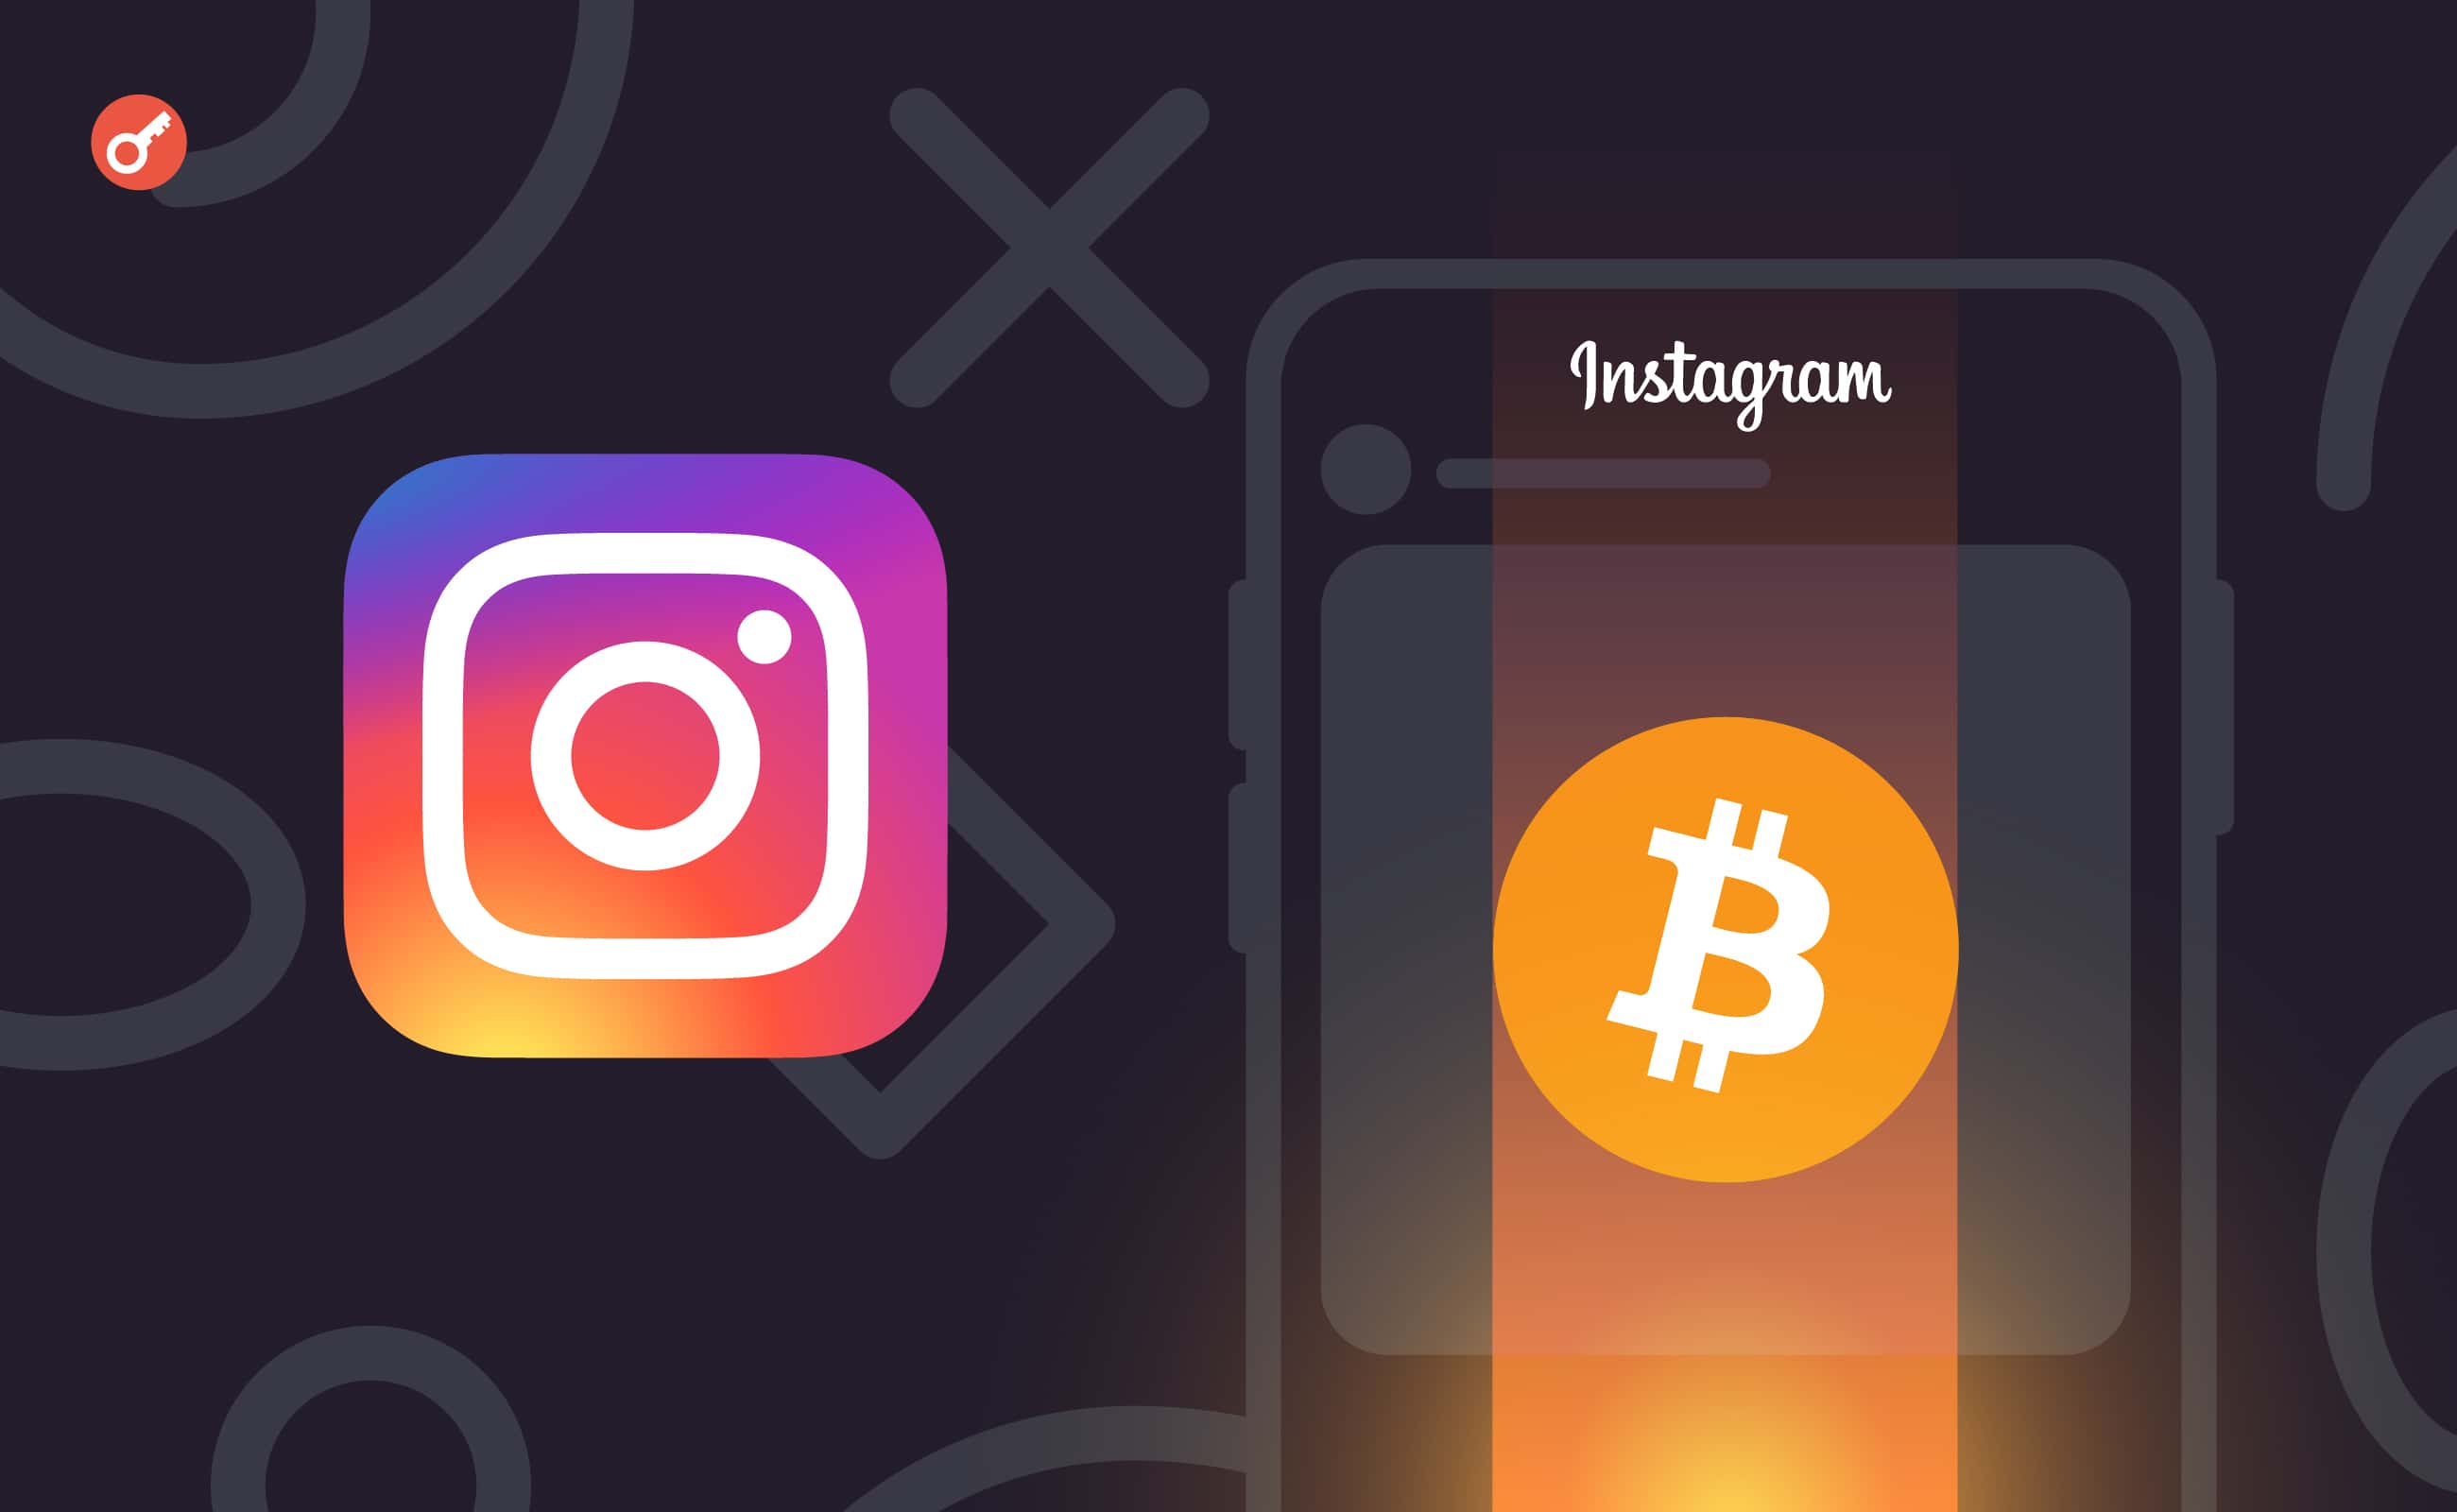 Instagram забанил пользователя за пост про биткоин. Заглавный коллаж новости.